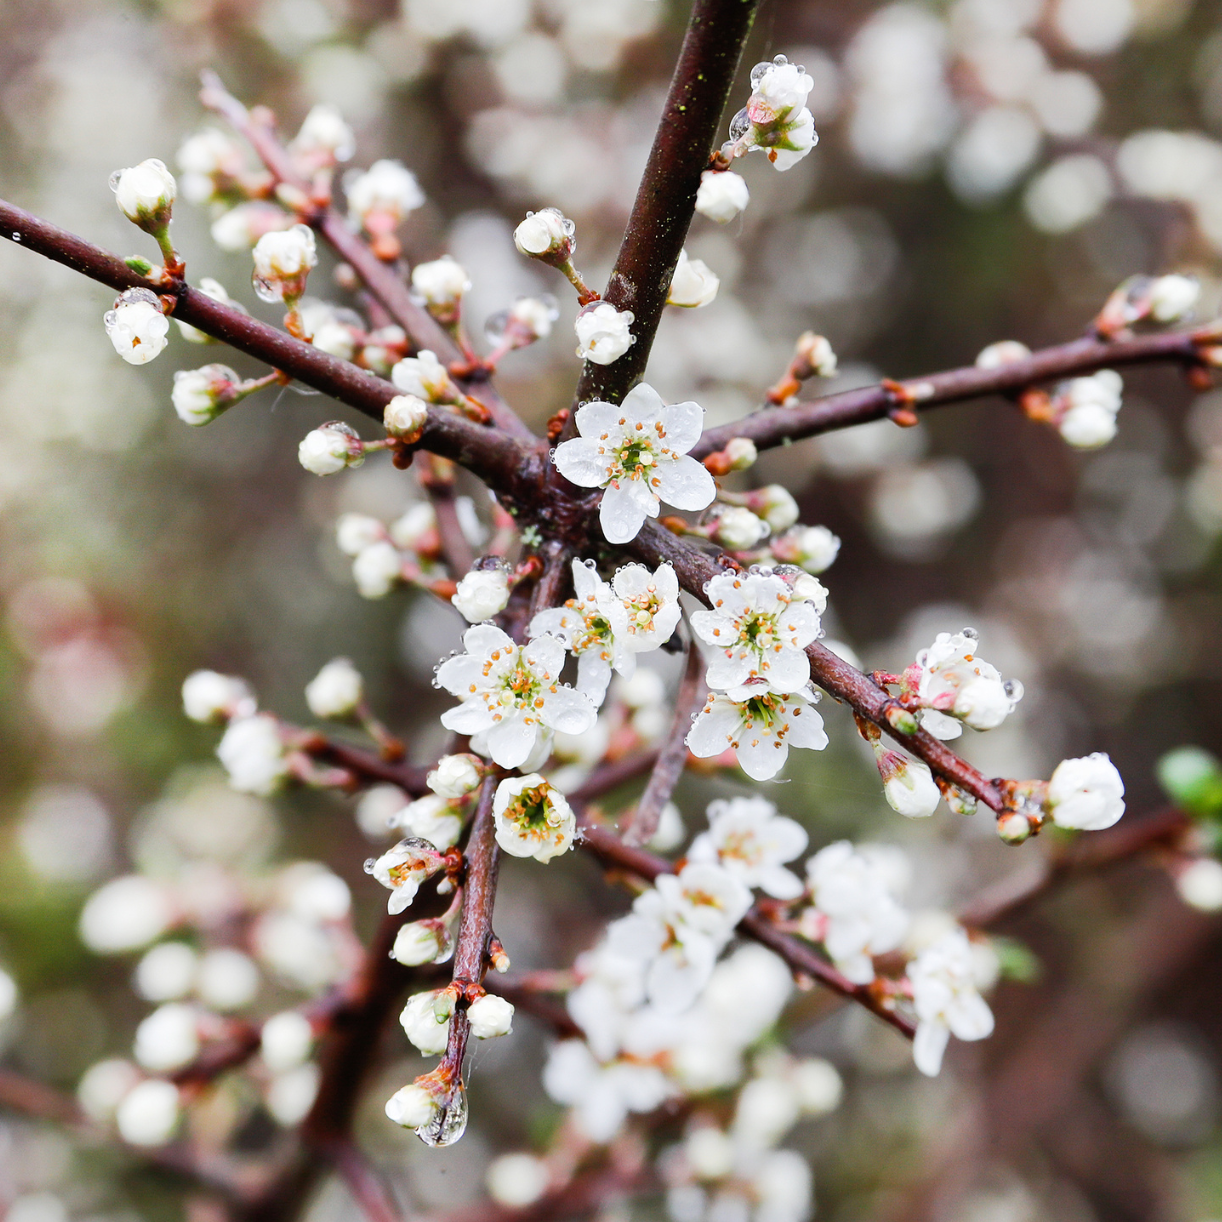 A close up of blossom flowers.